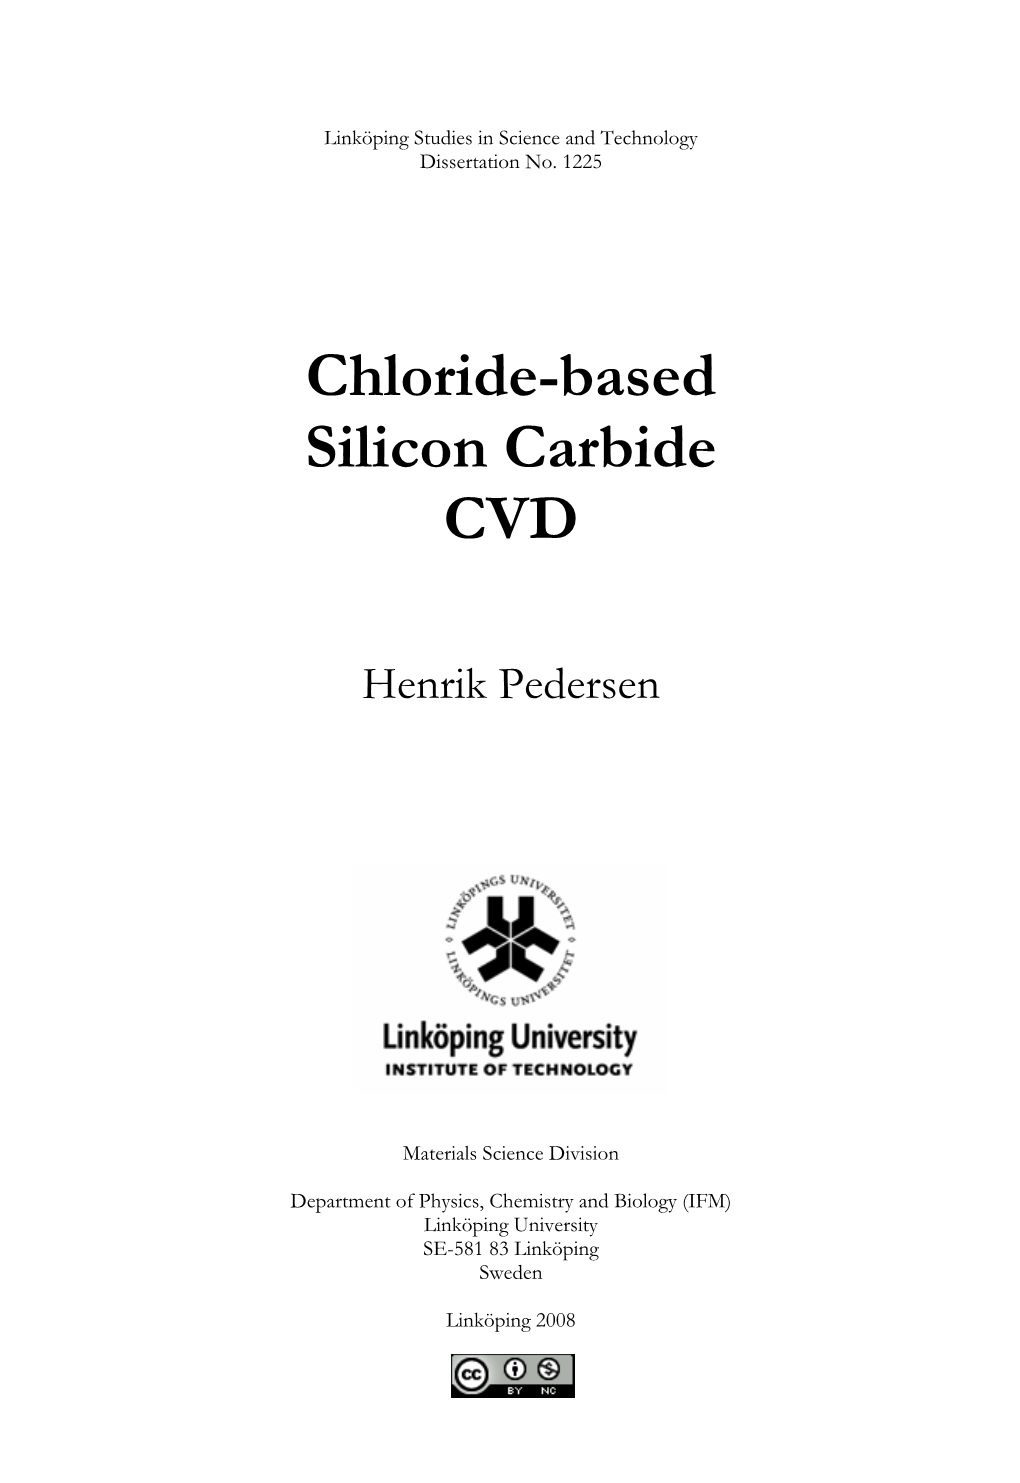 Chloride-Based Silicon Carbide CVD